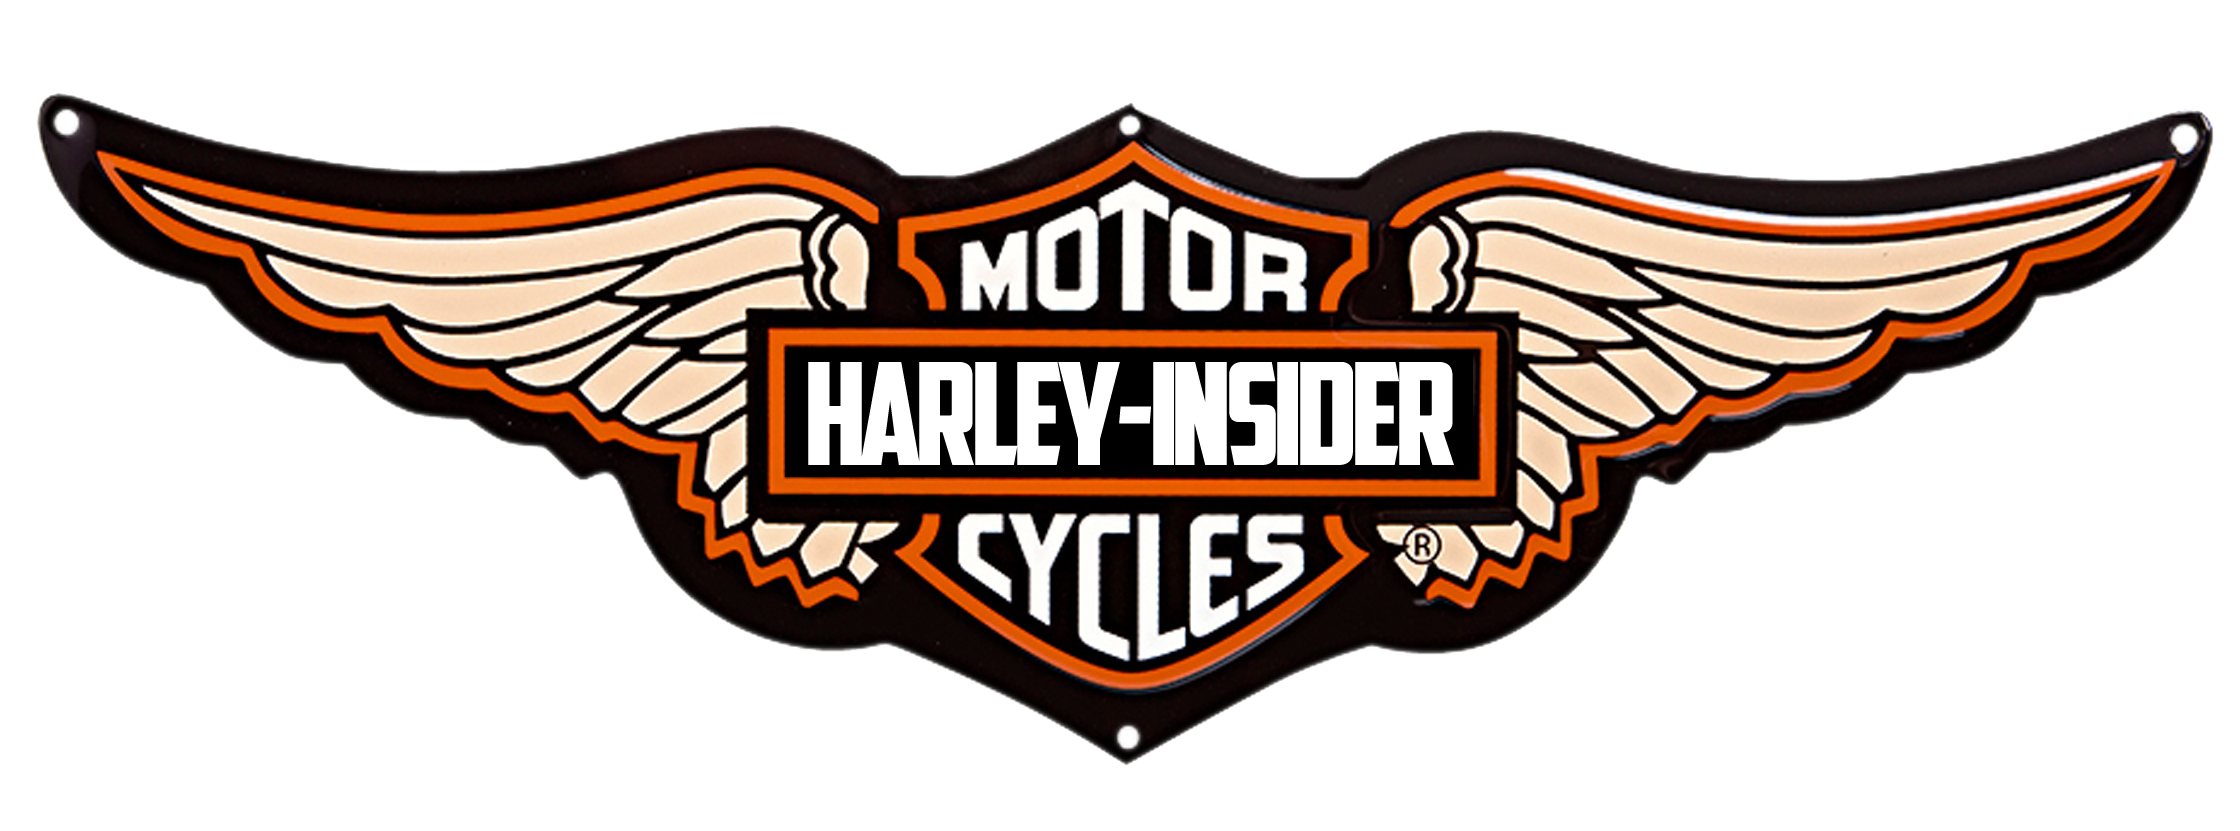 Harley Davidson Motorcycles Logo Hd Images 3 Hd Wallpapers - Harley Davidson Bike Logo Png - HD Wallpaper 